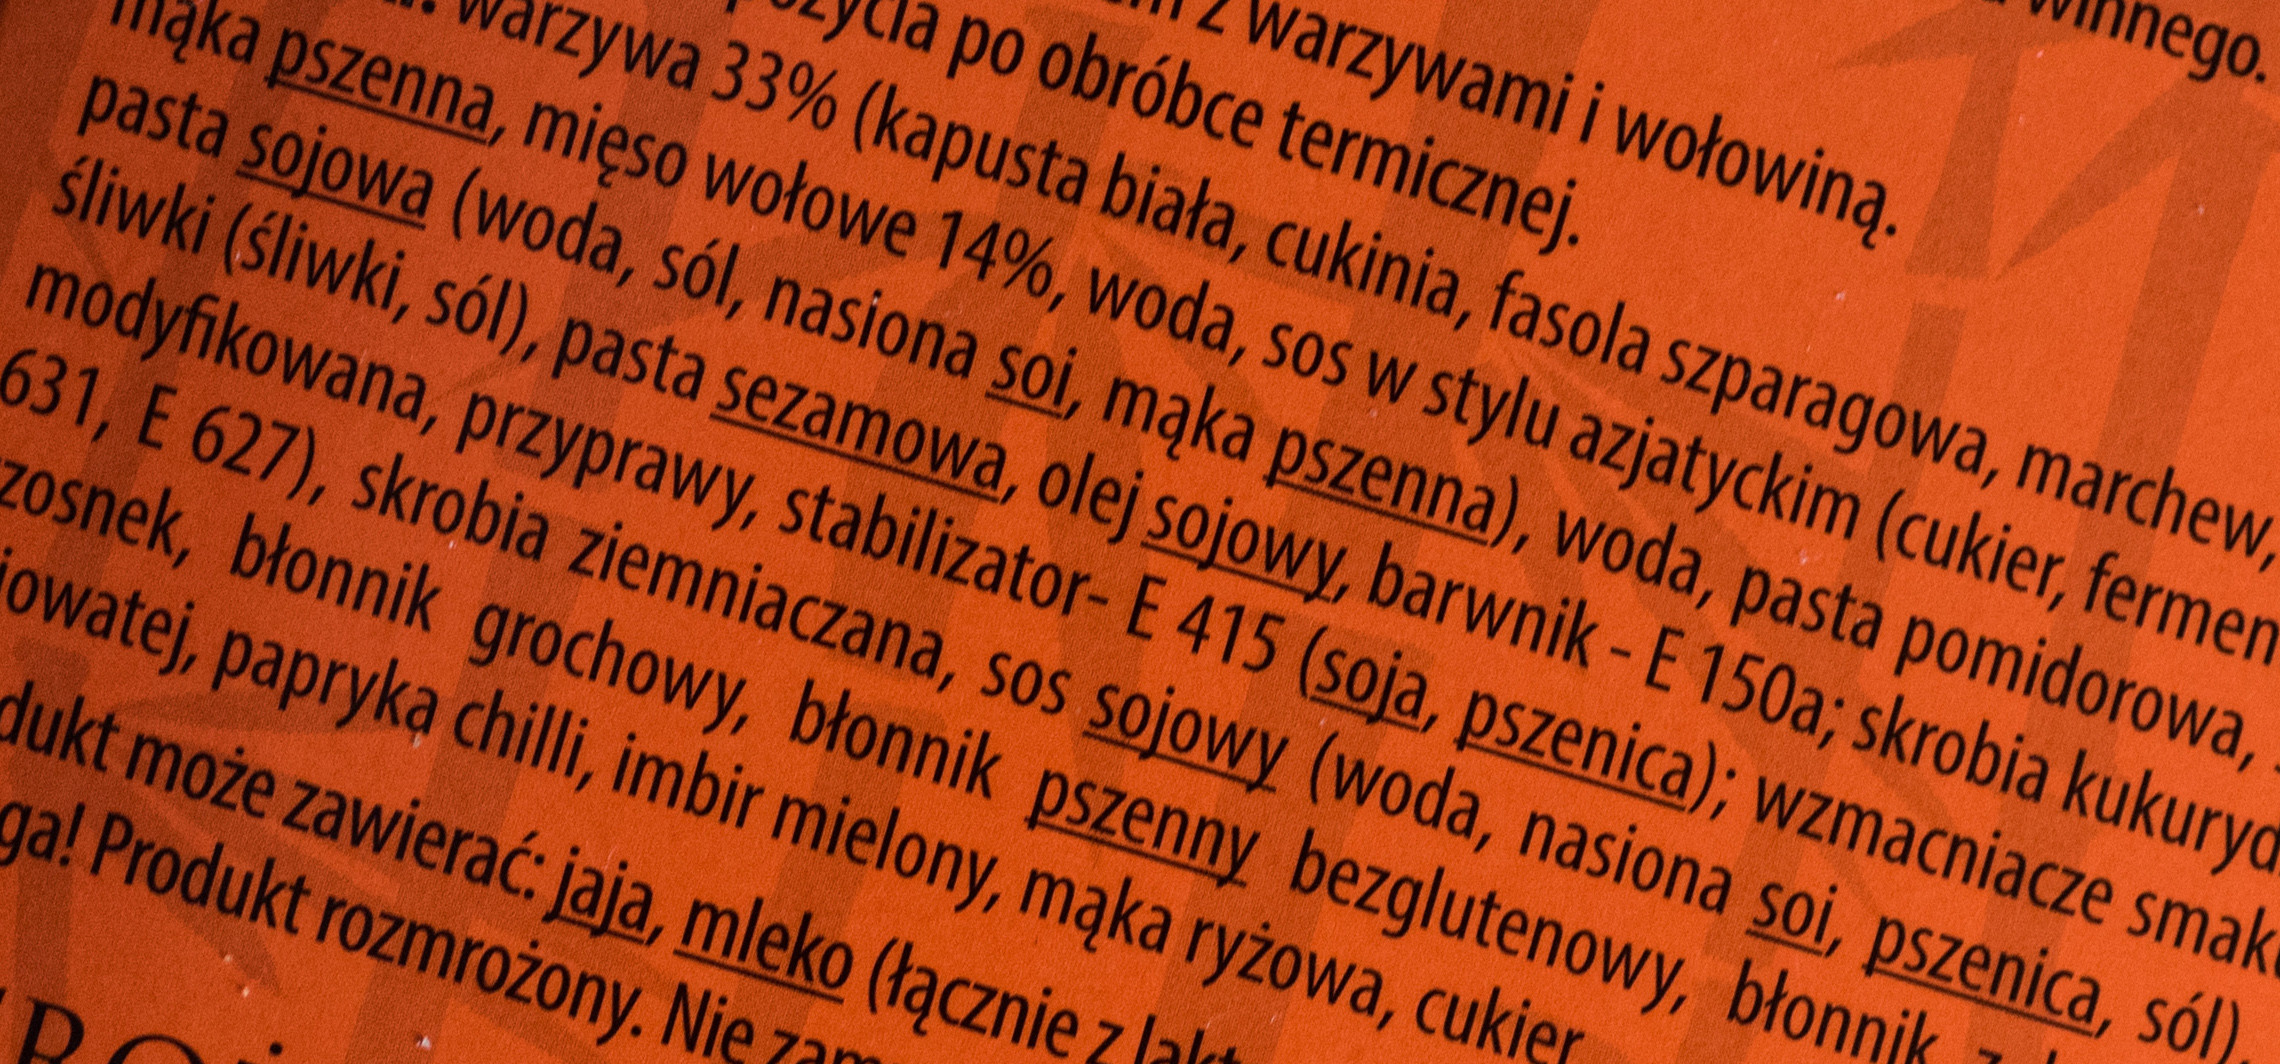 Inowrocław - Zielona środa: Jedzenie - najpowszechniejsza choroba cywilizacyjna?